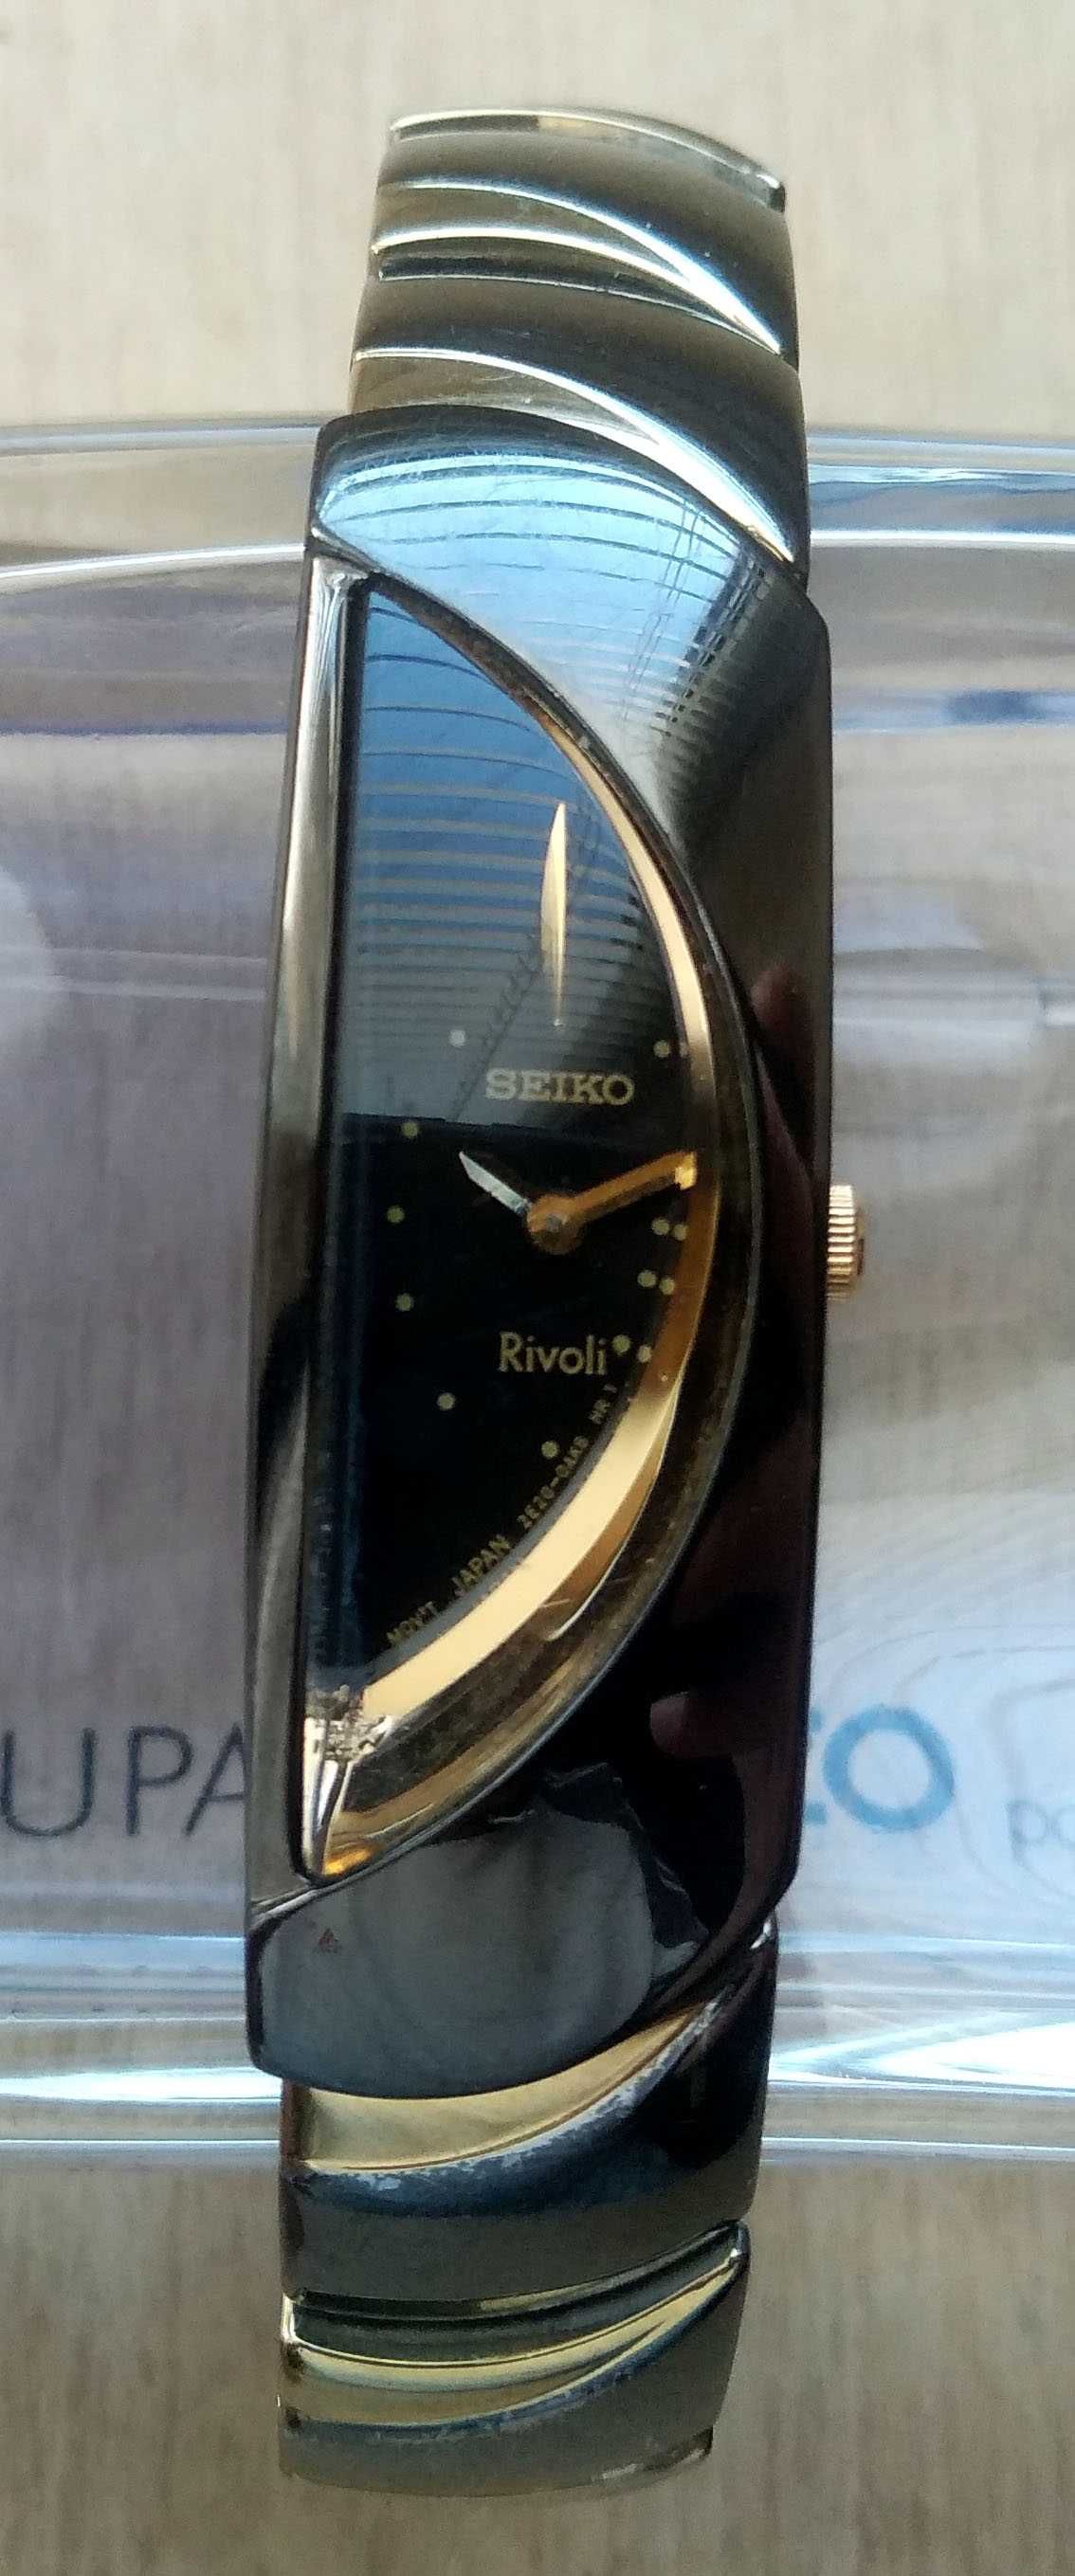 Часы женские Seiko Rivoli 2E20-0AK0. Возм. обмен